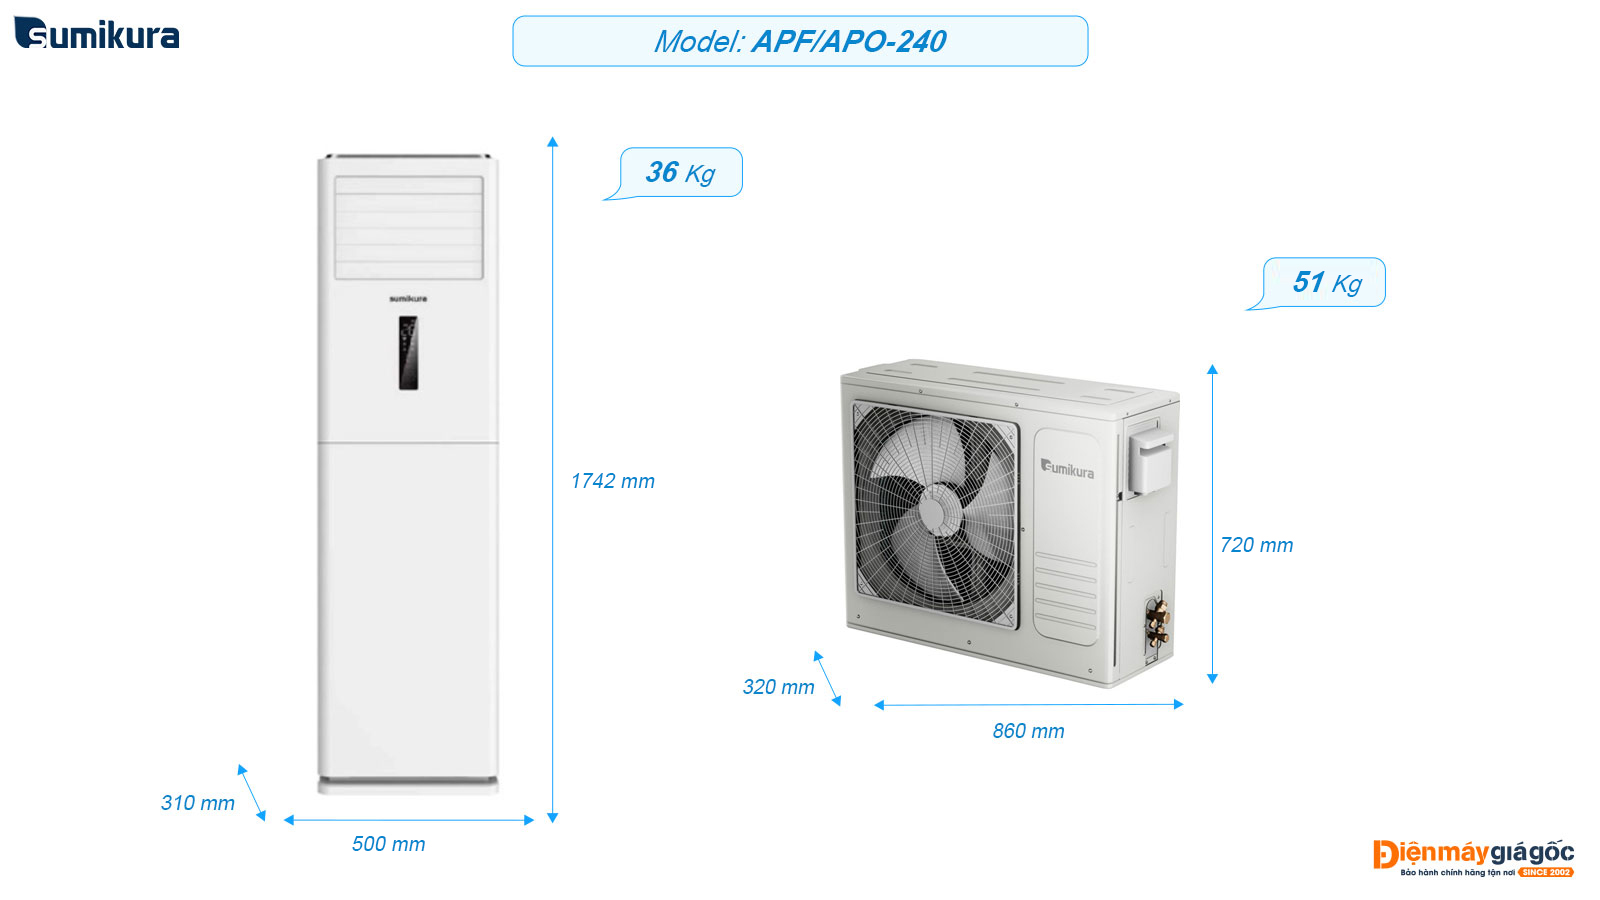 Sumikura floor standing air conditioning APF/APO-240 (2.5 Hp)